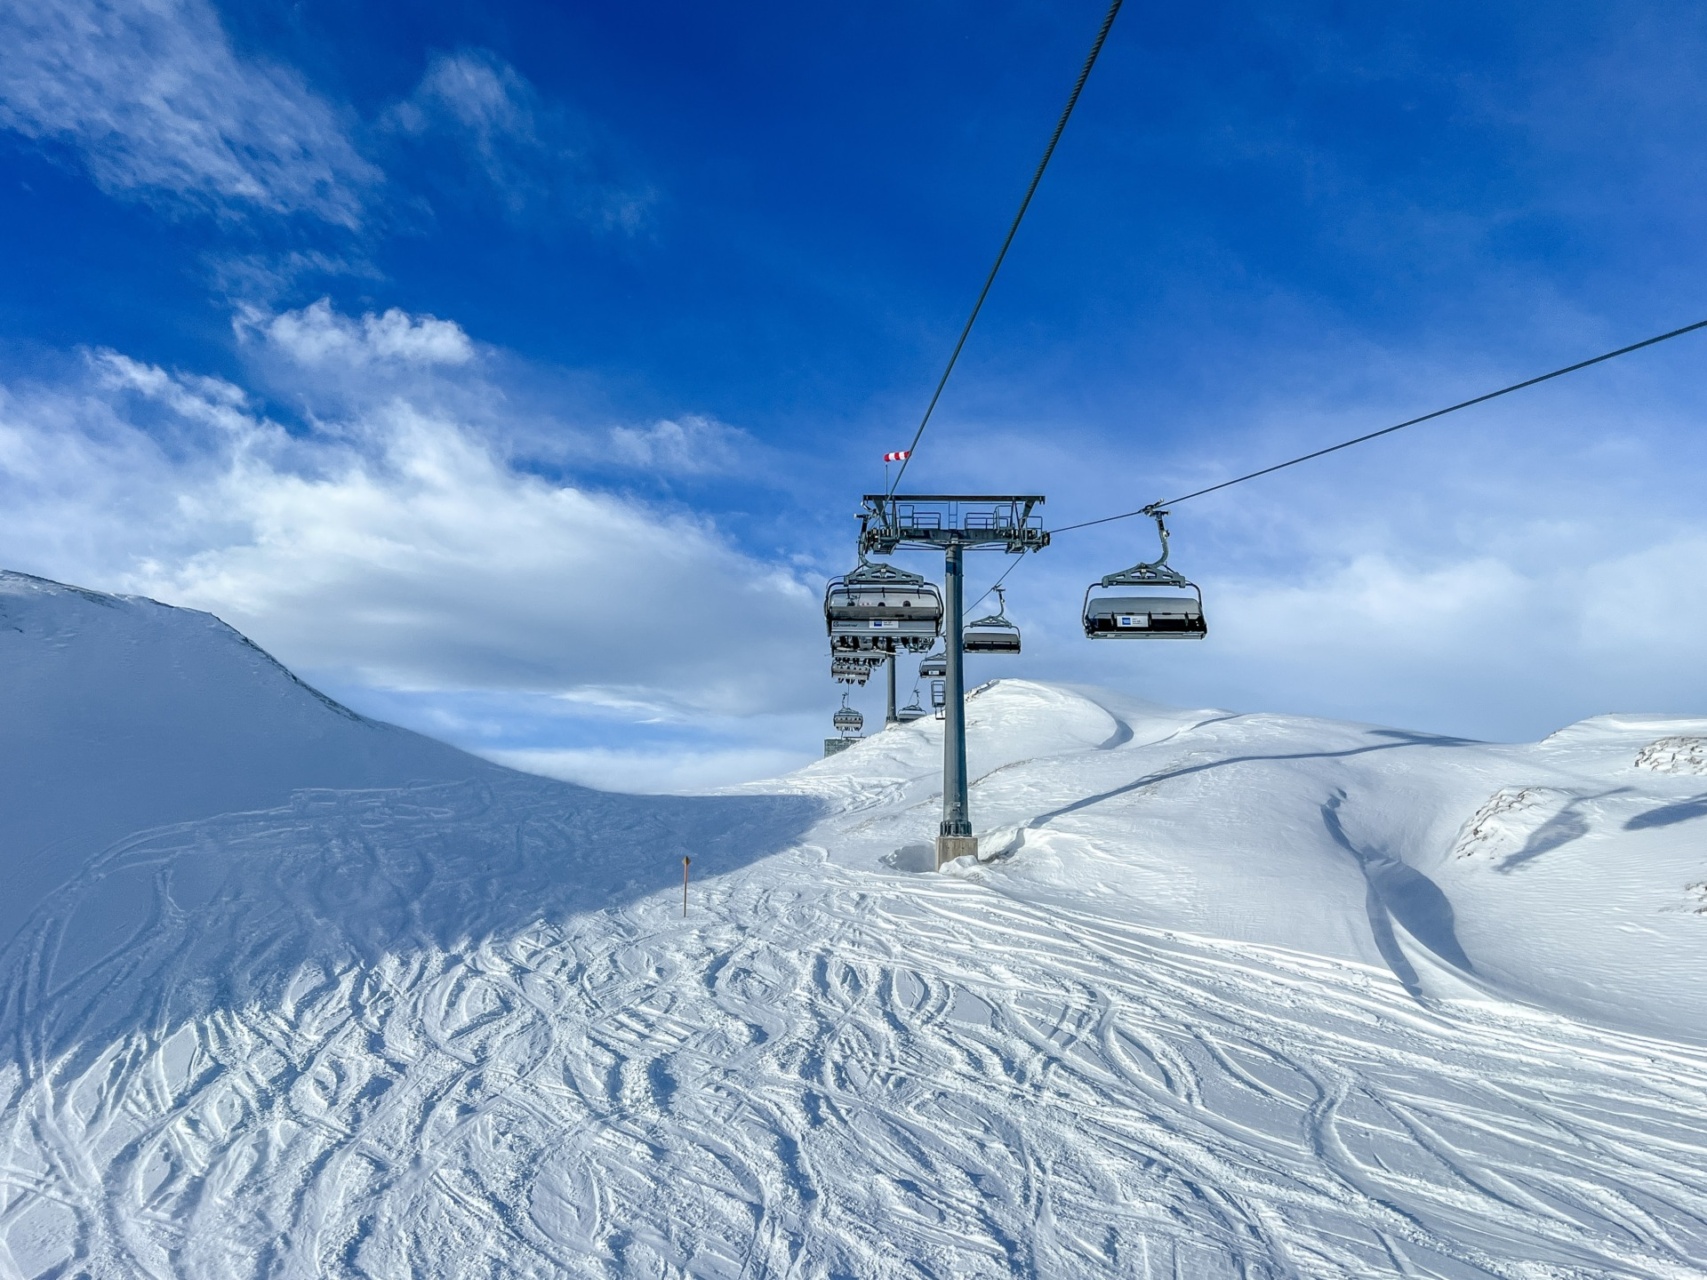 Alpen: even adempauze, dinsdag een prachtige wintersportdag